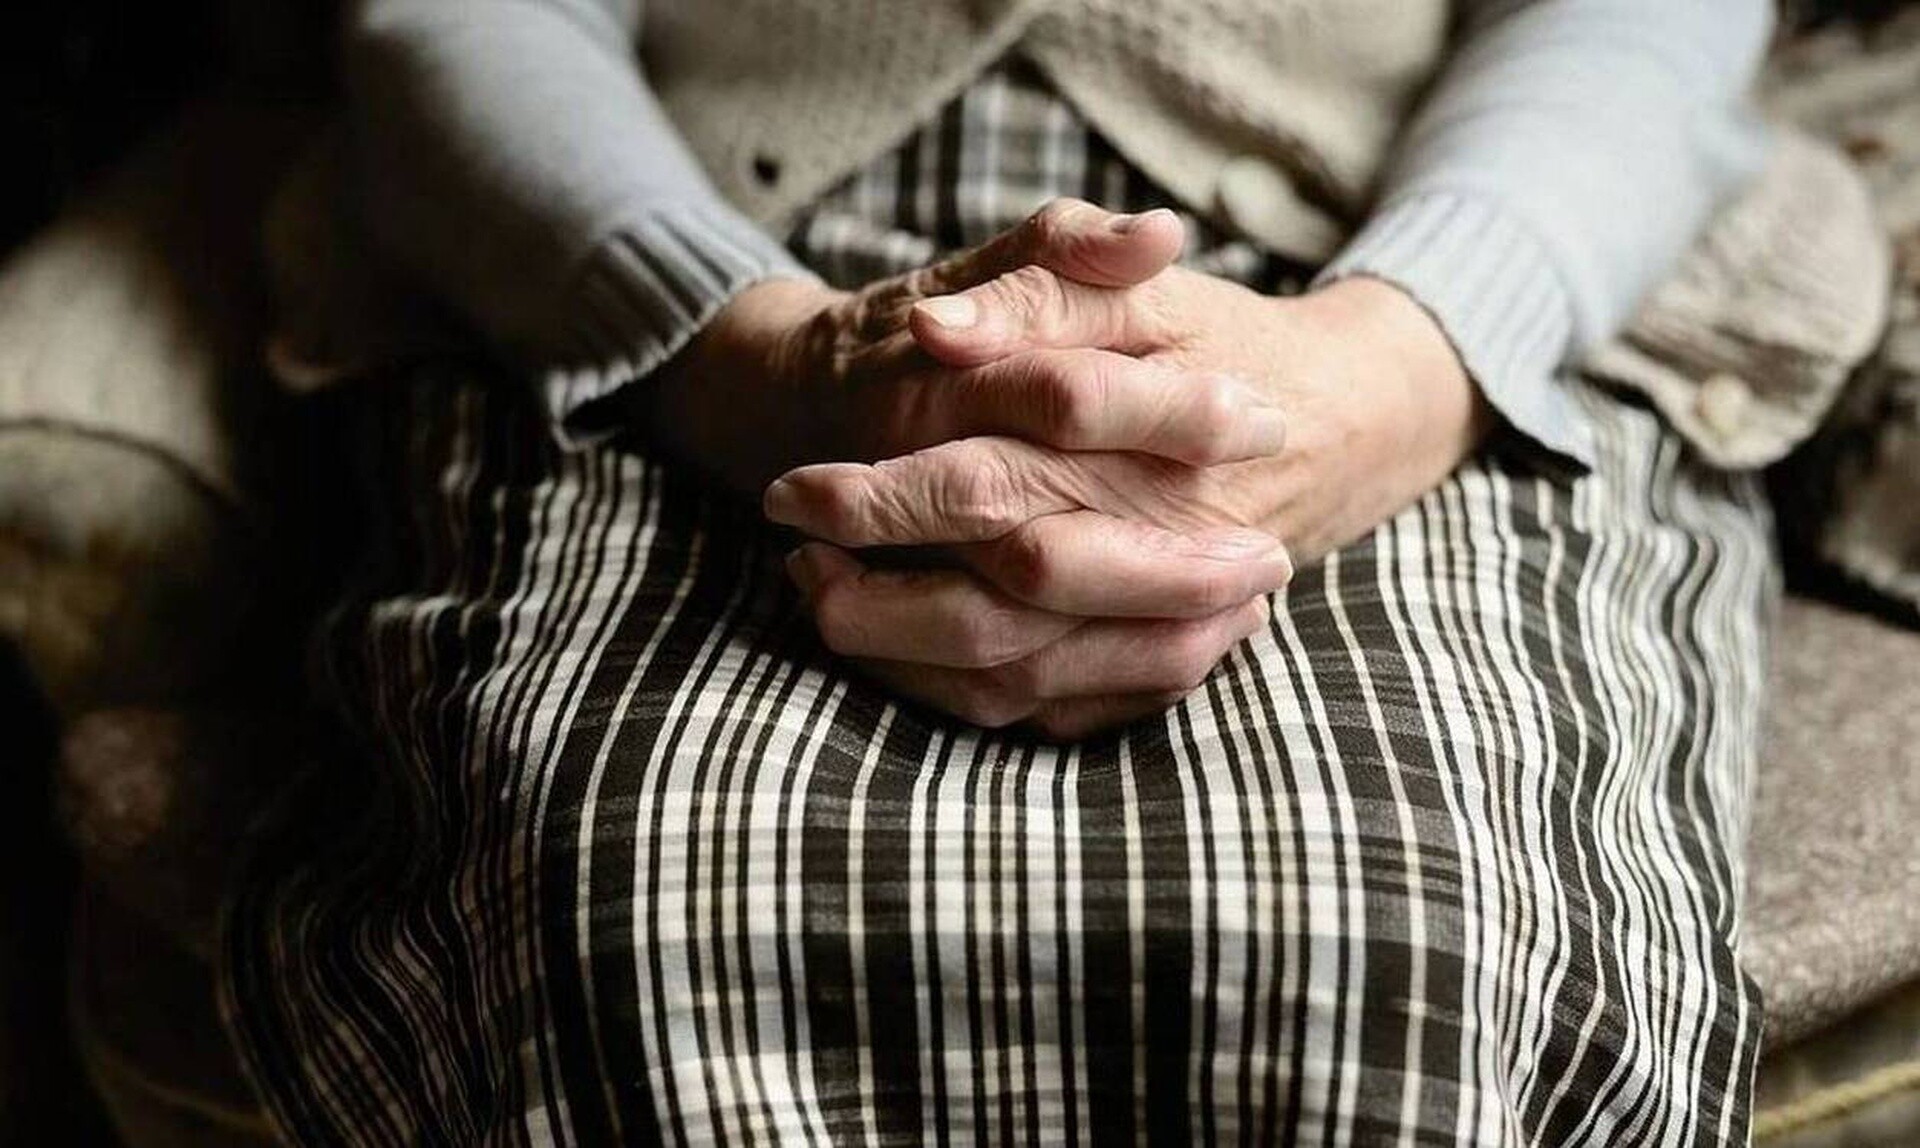 Θρασύτατοι ληστές έστησαν παγίδα σε ηλικιωμένη: Το «κόλπο» με το αλουμινόχαρτο